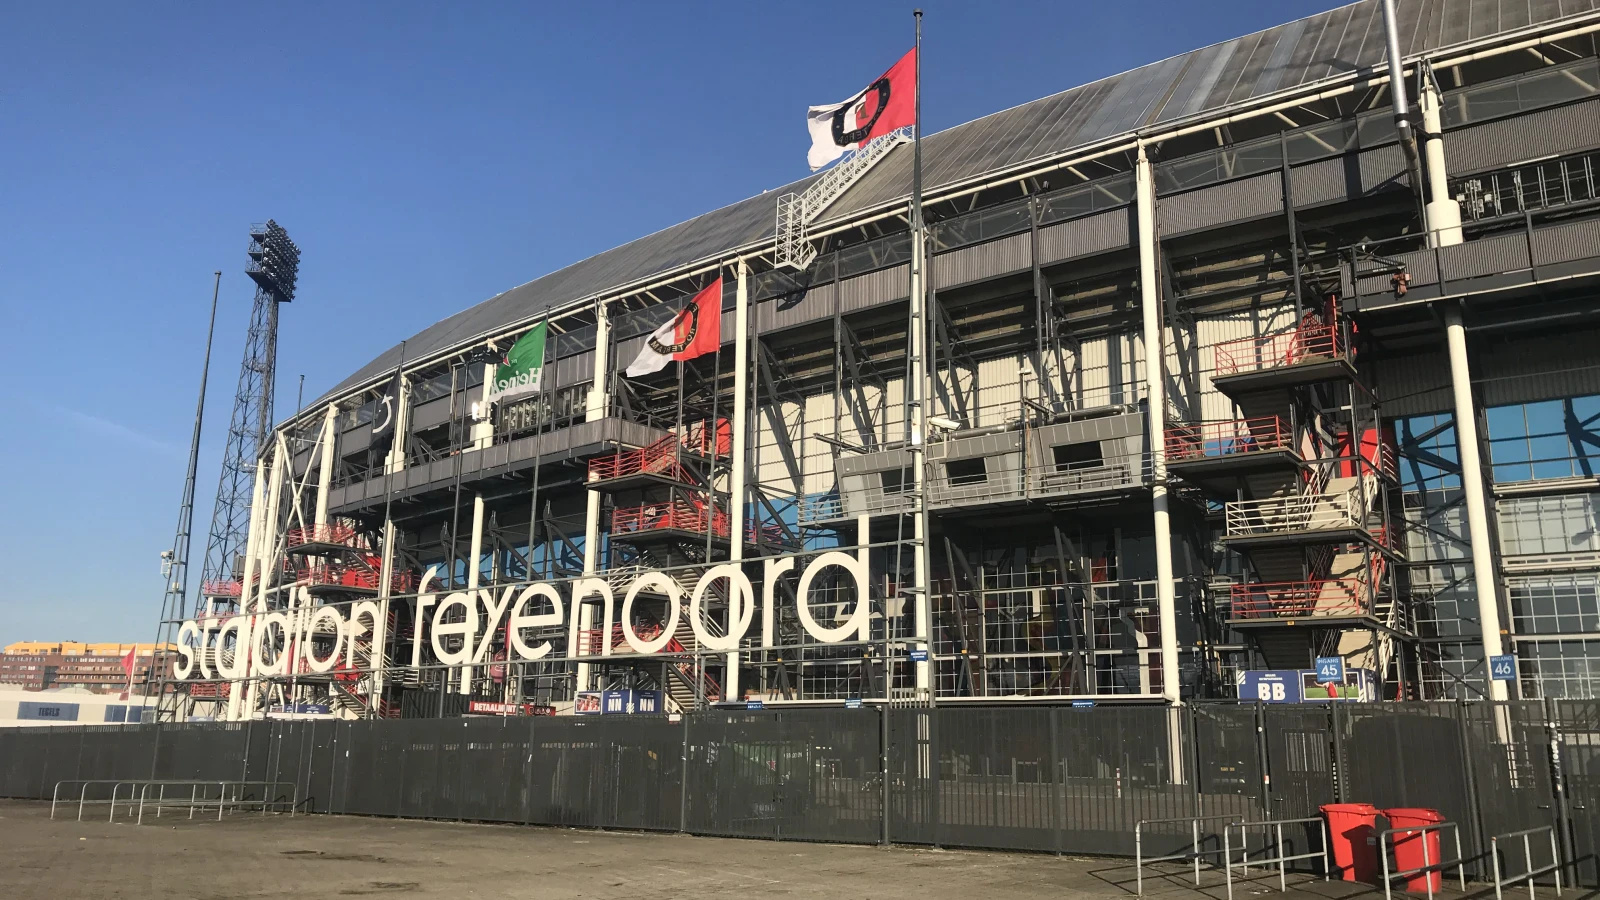 Feyenoord interessant voor investeerders: 'Makkelijk naar de Champions League'